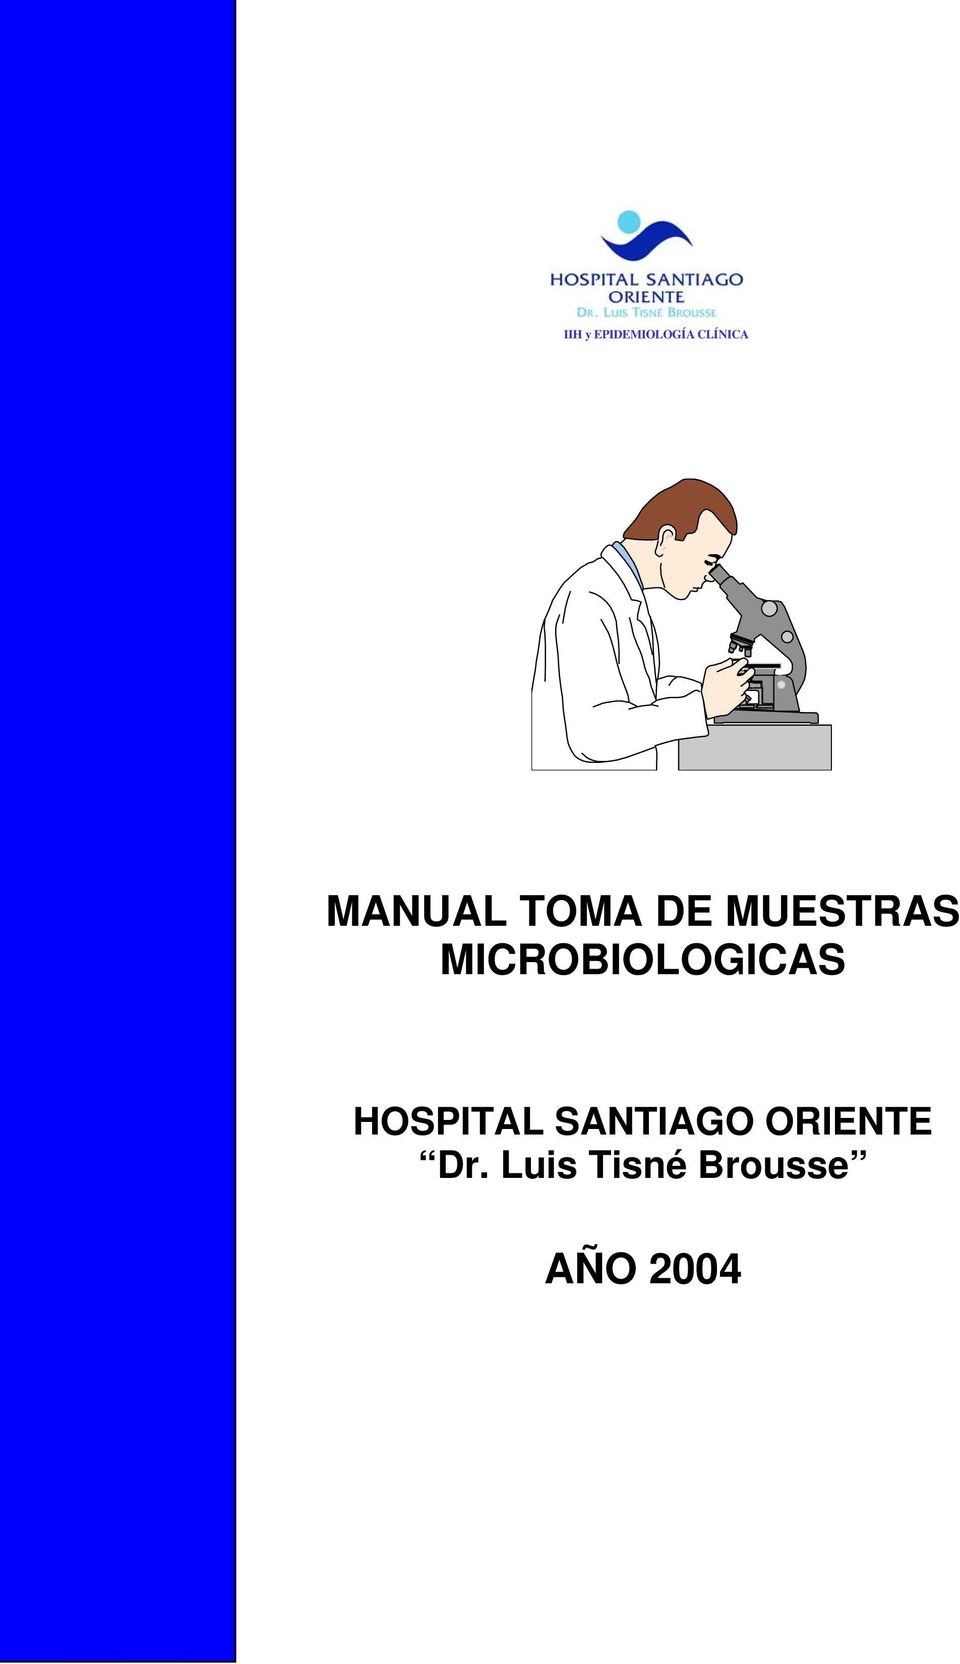 MICROBIOLOGICAS HOSPITAL